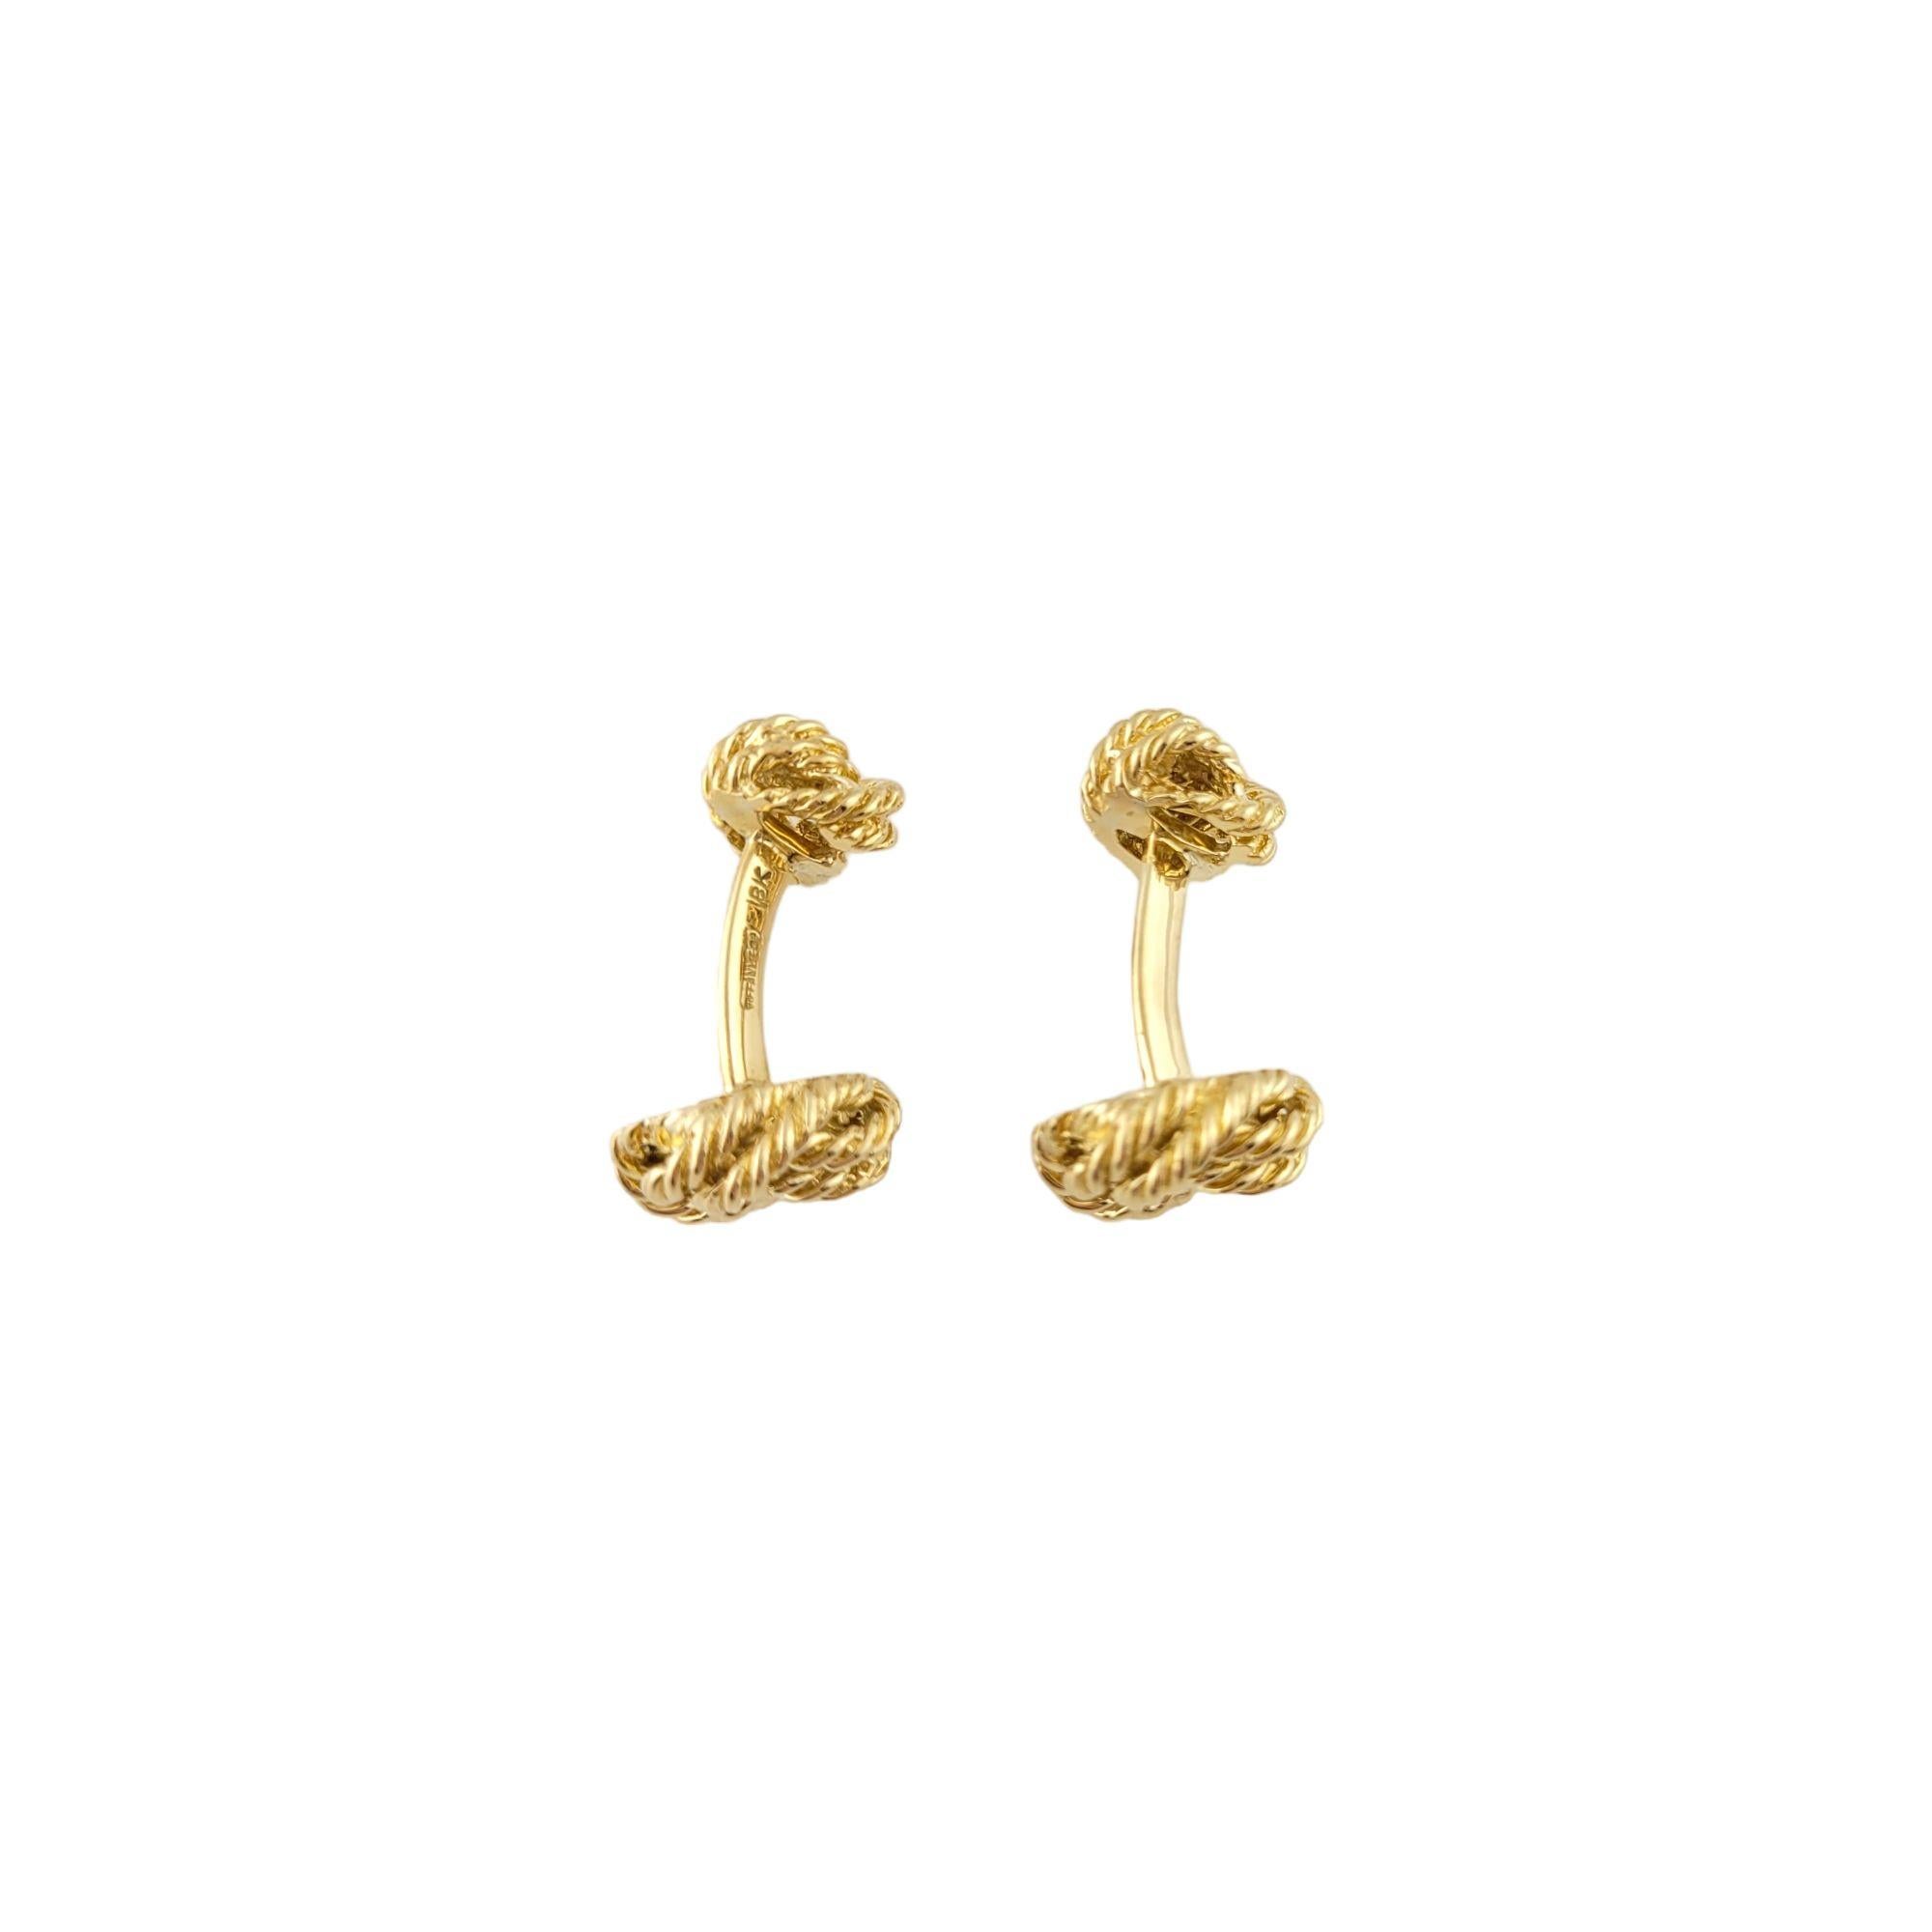 Boutons de manchette vintage en or jaune 18K Tiffany & Co Knot

Magnifiques boutons de manchette en or 18 carats du designer Tiffany & Co

Taille (nœud plus grand) : 14mm X 14mm X 6mm
Taille (petit nœud) : 10mm X 10mm X 6mm

Poids : 13,9 g/ 8,9